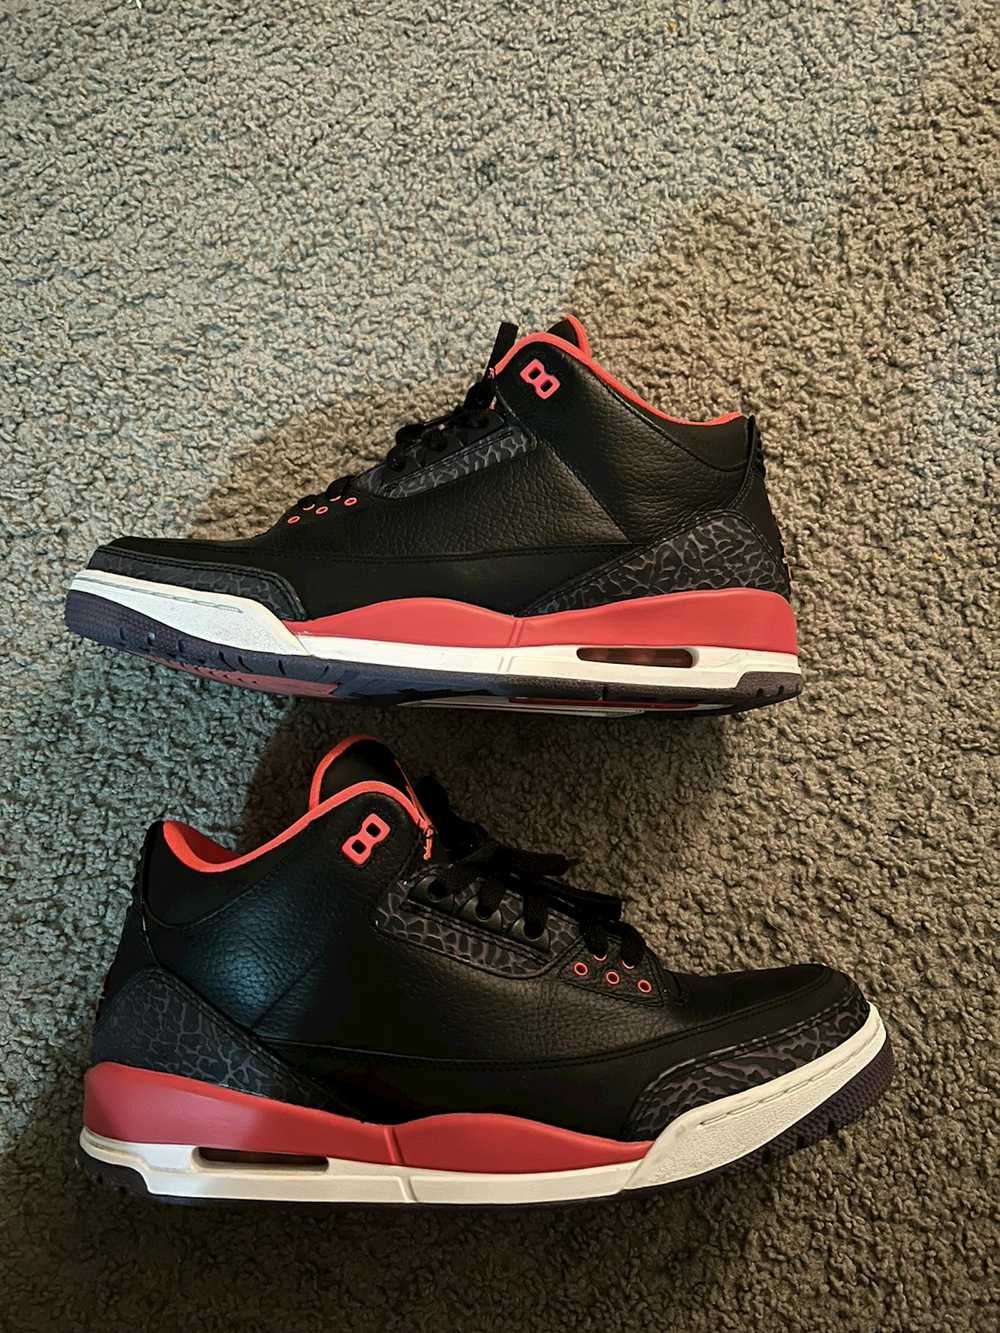 Jordan Brand Jordan 3 Crimson (2013) - image 6